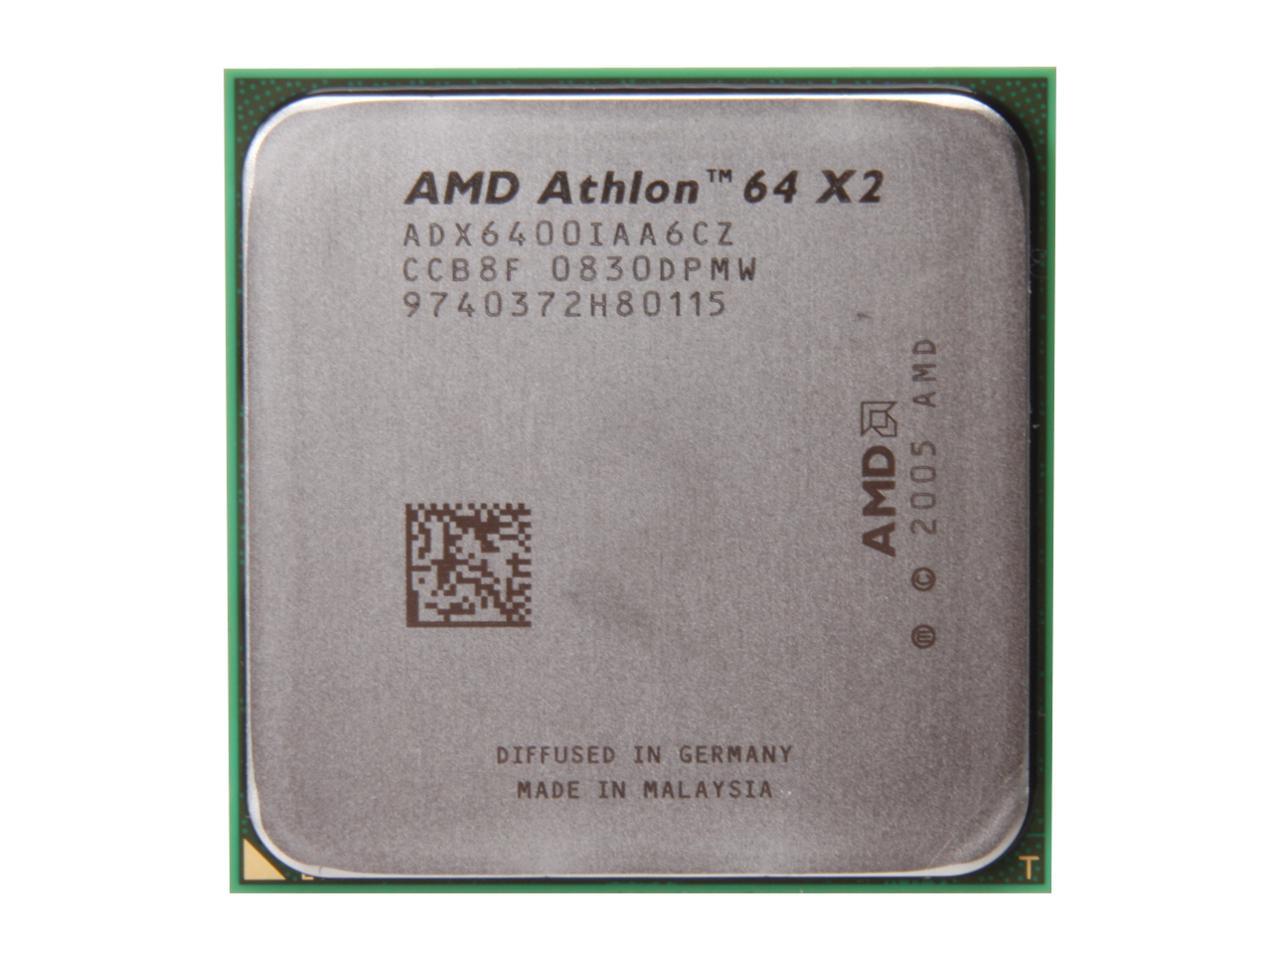 Amd athlon x2 сокет. AMD Athlon 64 x2 6400+. AMD k8: Athlon 64 x2. AMD Athlon 64 x2 Dual Core 6400+. Процессор AMD Athlon 64 x2 3800+ Windsor.